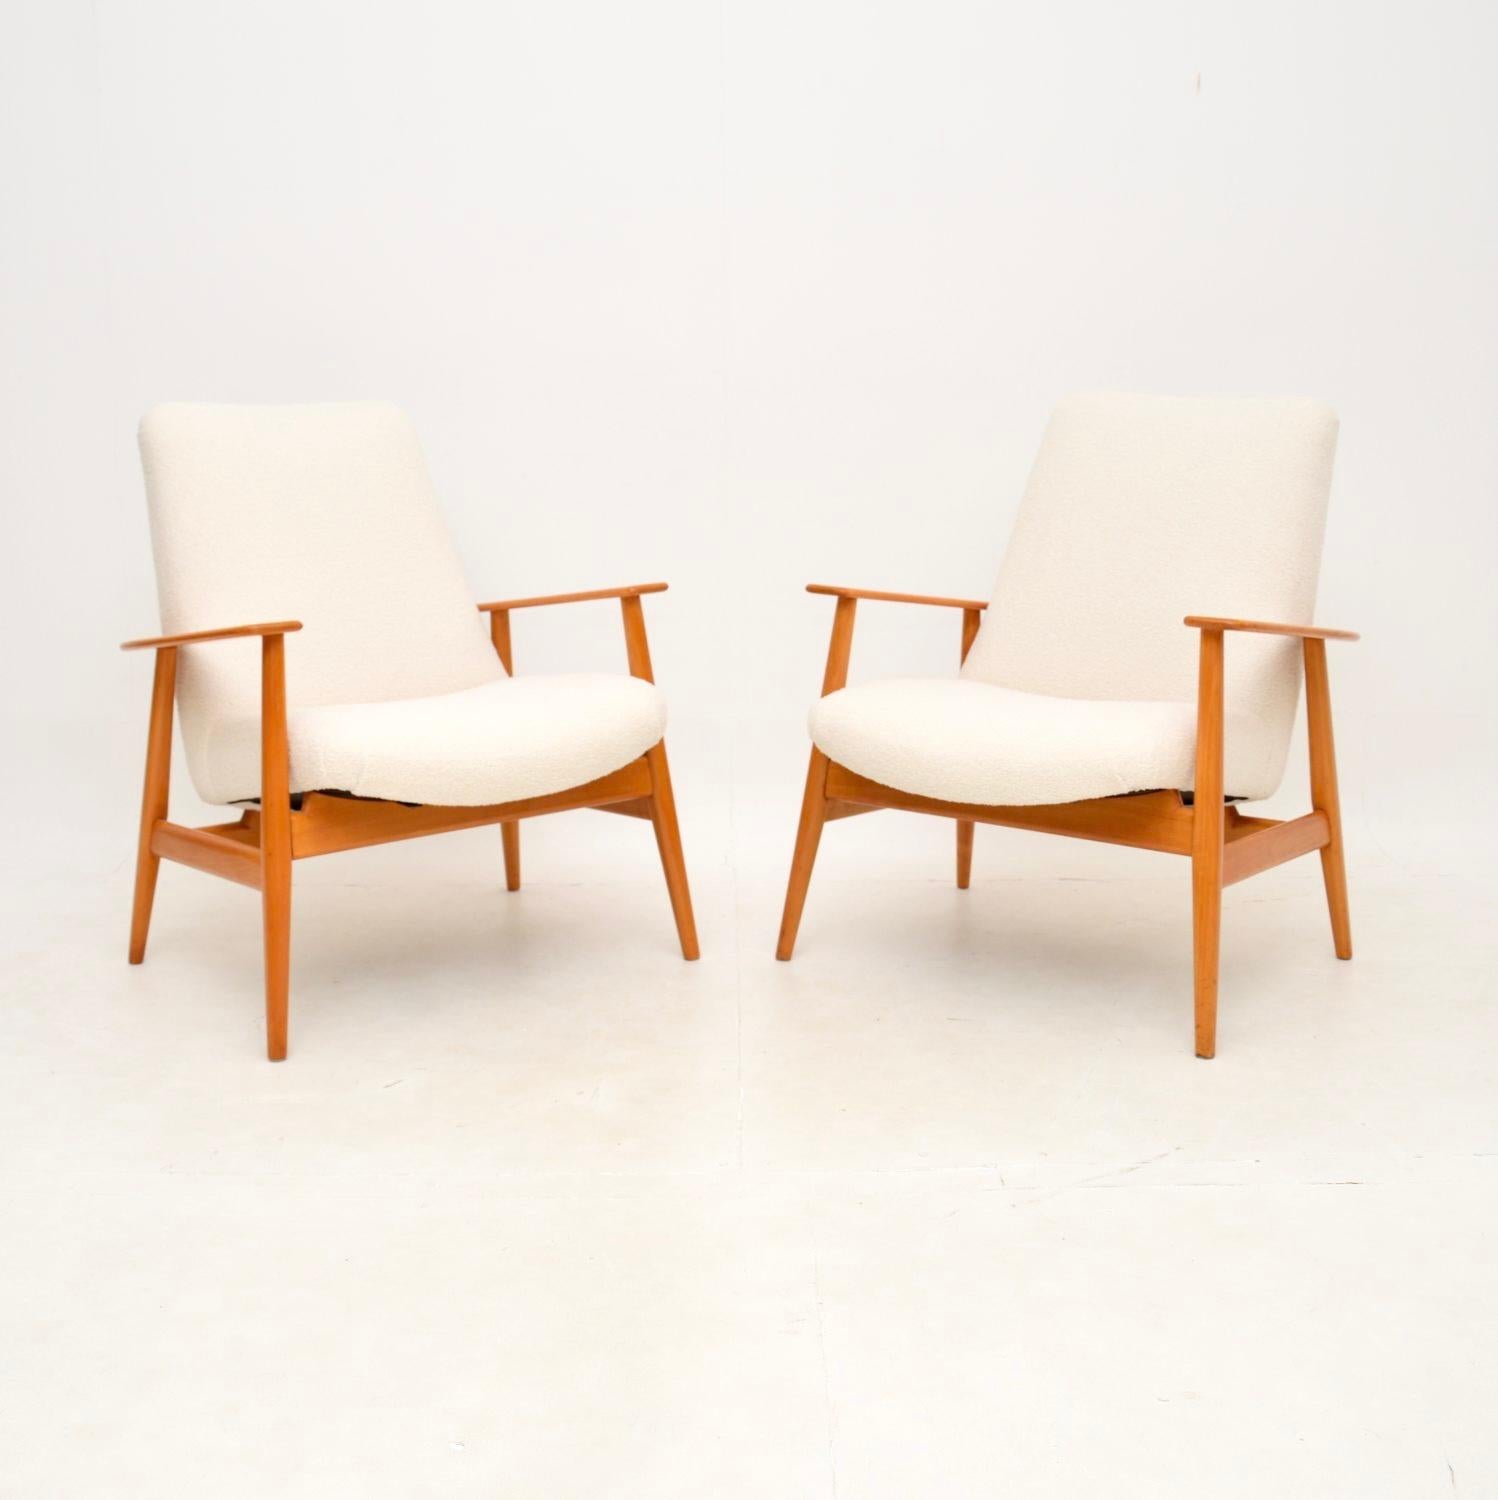 Une paire de fauteuils vintage danois en merisier, élégants et extrêmement bien faits. Récemment importées du Danemark, elles datent des années 1950-60.

Ils sont d'une qualité exceptionnelle et très confortables. Elles sont magnifiques de tous les